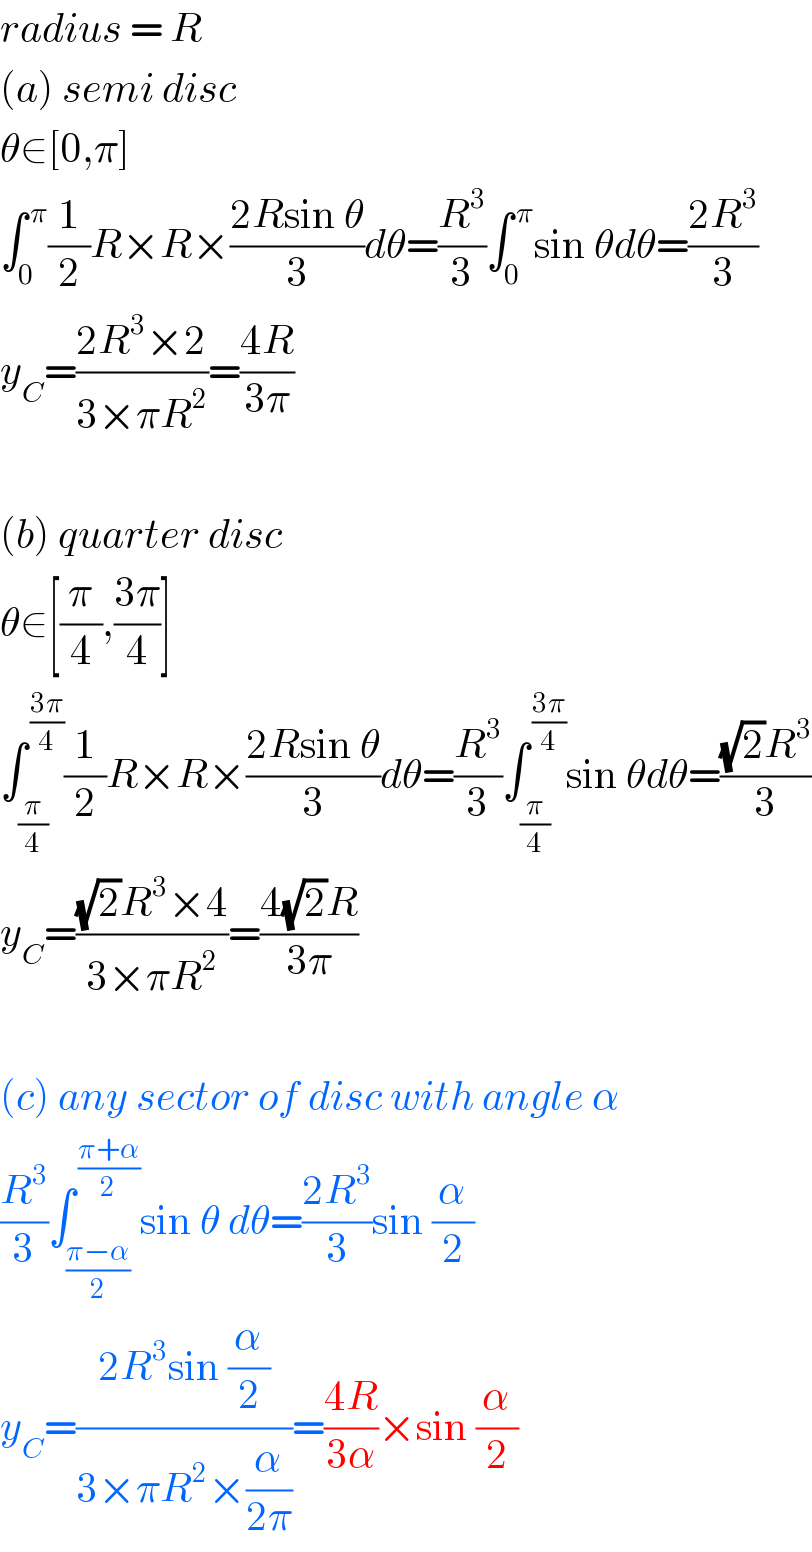 radius = R  (a) semi disc  θ∈[0,π]  ∫_0 ^( π) (1/2)R×R×((2Rsin θ)/3)dθ=(R^3 /3)∫_0 ^( π) sin θdθ=((2R^3 )/3)  y_C =((2R^3 ×2)/(3×πR^2 ))=((4R)/(3π))    (b) quarter disc  θ∈[(π/4),((3π)/4)]  ∫_(π/4) ^( ((3π)/4)) (1/2)R×R×((2Rsin θ)/3)dθ=(R^3 /3)∫_(π/4) ^( ((3π)/4)) sin θdθ=(((√2)R^3 )/3)  y_C =(((√2)R^3 ×4)/(3×πR^2 ))=((4(√2)R)/(3π))    (c) any sector of disc with angle α  (R^3 /3)∫_((π−α)/2) ^( ((π+α)/2)) sin θ dθ=((2R^3 )/3)sin (α/2)  y_C =((2R^3 sin (α/2))/(3×πR^2 ×(α/(2π))))=((4R)/(3α))×sin (α/2)  